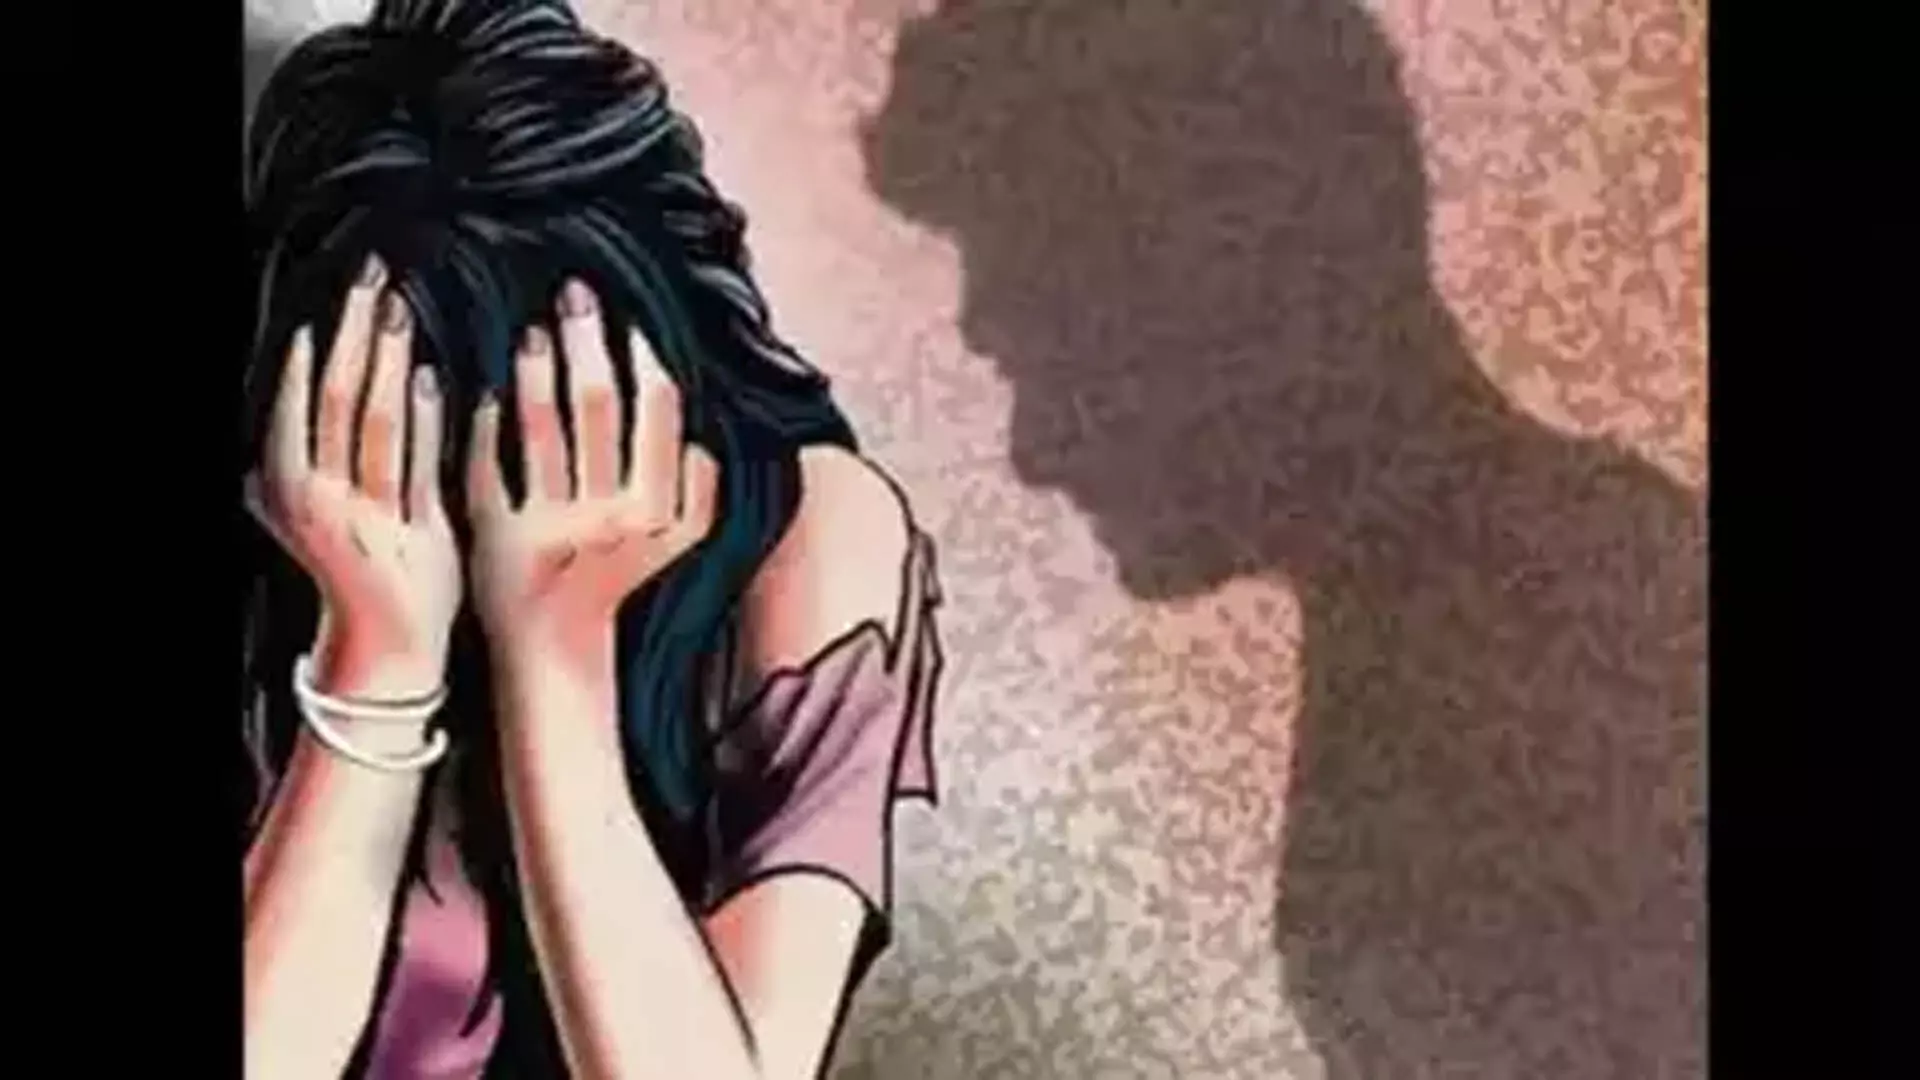 कर्नाटक 28 वर्षीय महिला को निजी तस्वीरों से ब्लैकमेल , 7 गिरफ्तार